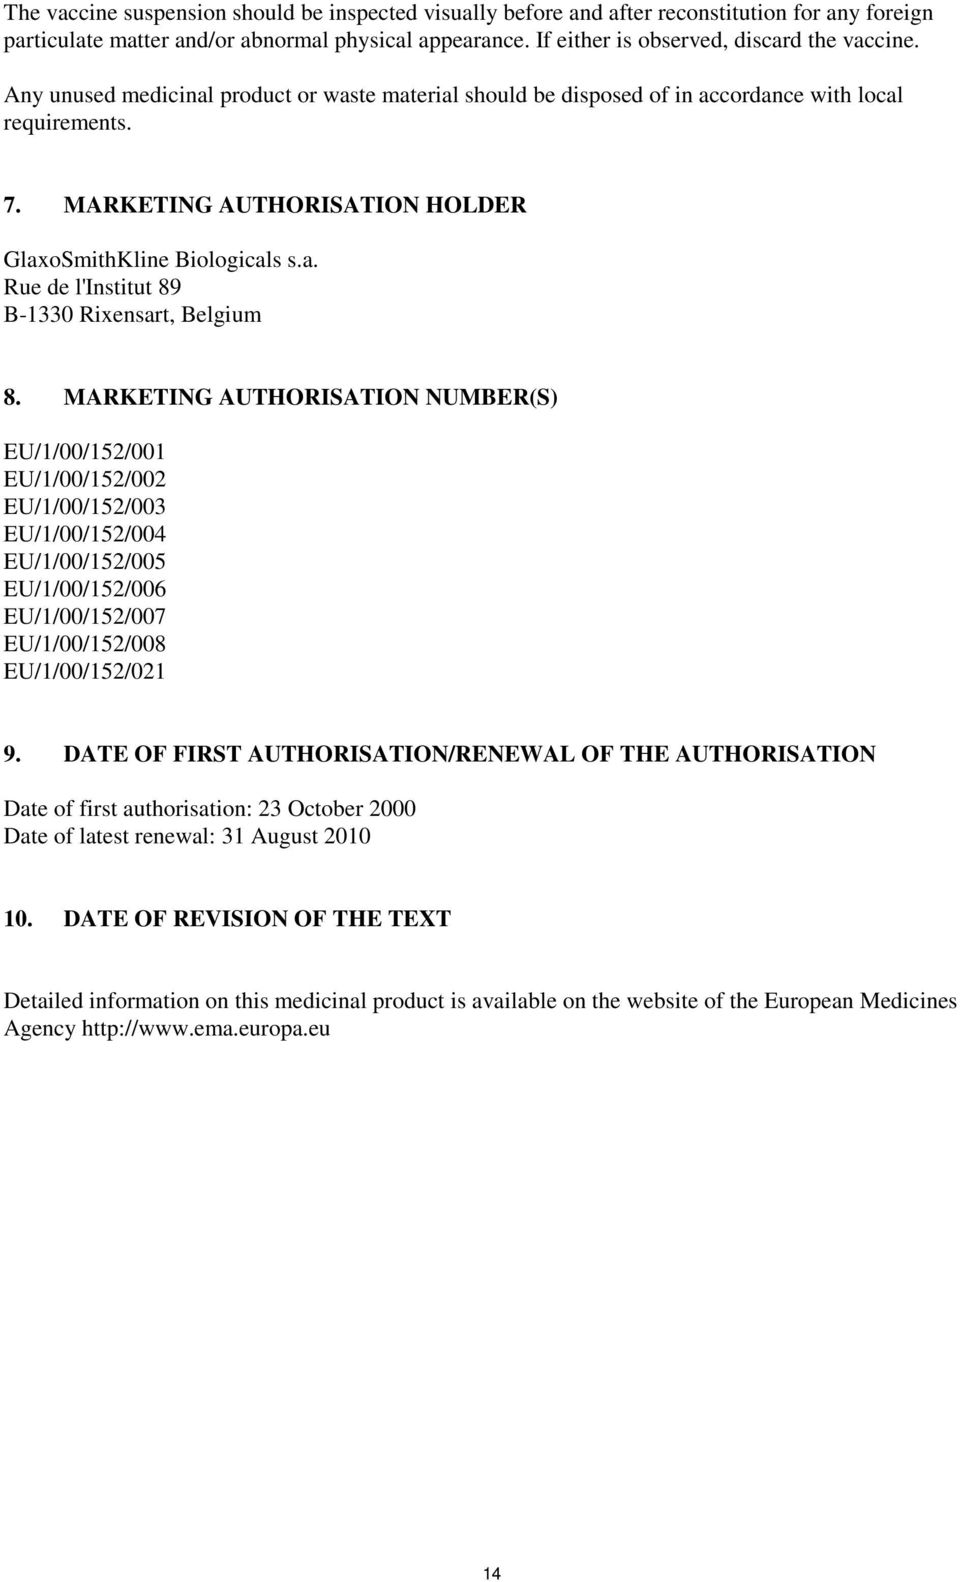 MARKETING AUTHORISATION NUMBER(S) EU/1/00/152/001 EU/1/00/152/002 EU/1/00/152/003 EU/1/00/152/004 EU/1/00/152/005 EU/1/00/152/006 EU/1/00/152/007 EU/1/00/152/008 EU/1/00/152/021 9.